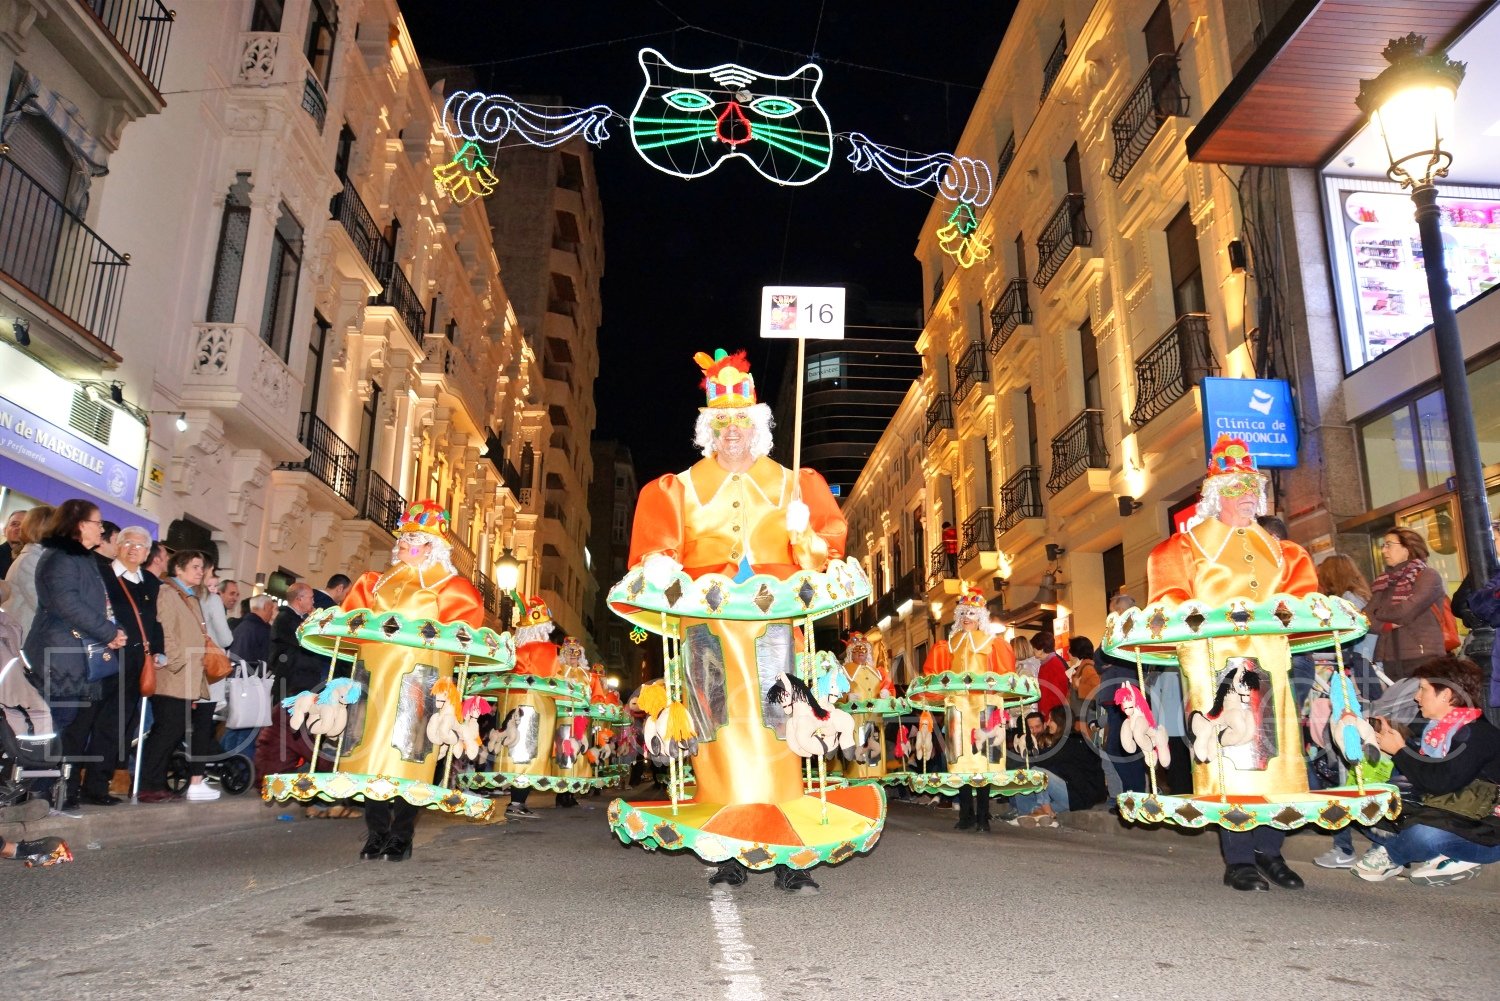 son los disfraces ganadores del Carnaval de Albacete 2020 - El Digital de Albacete